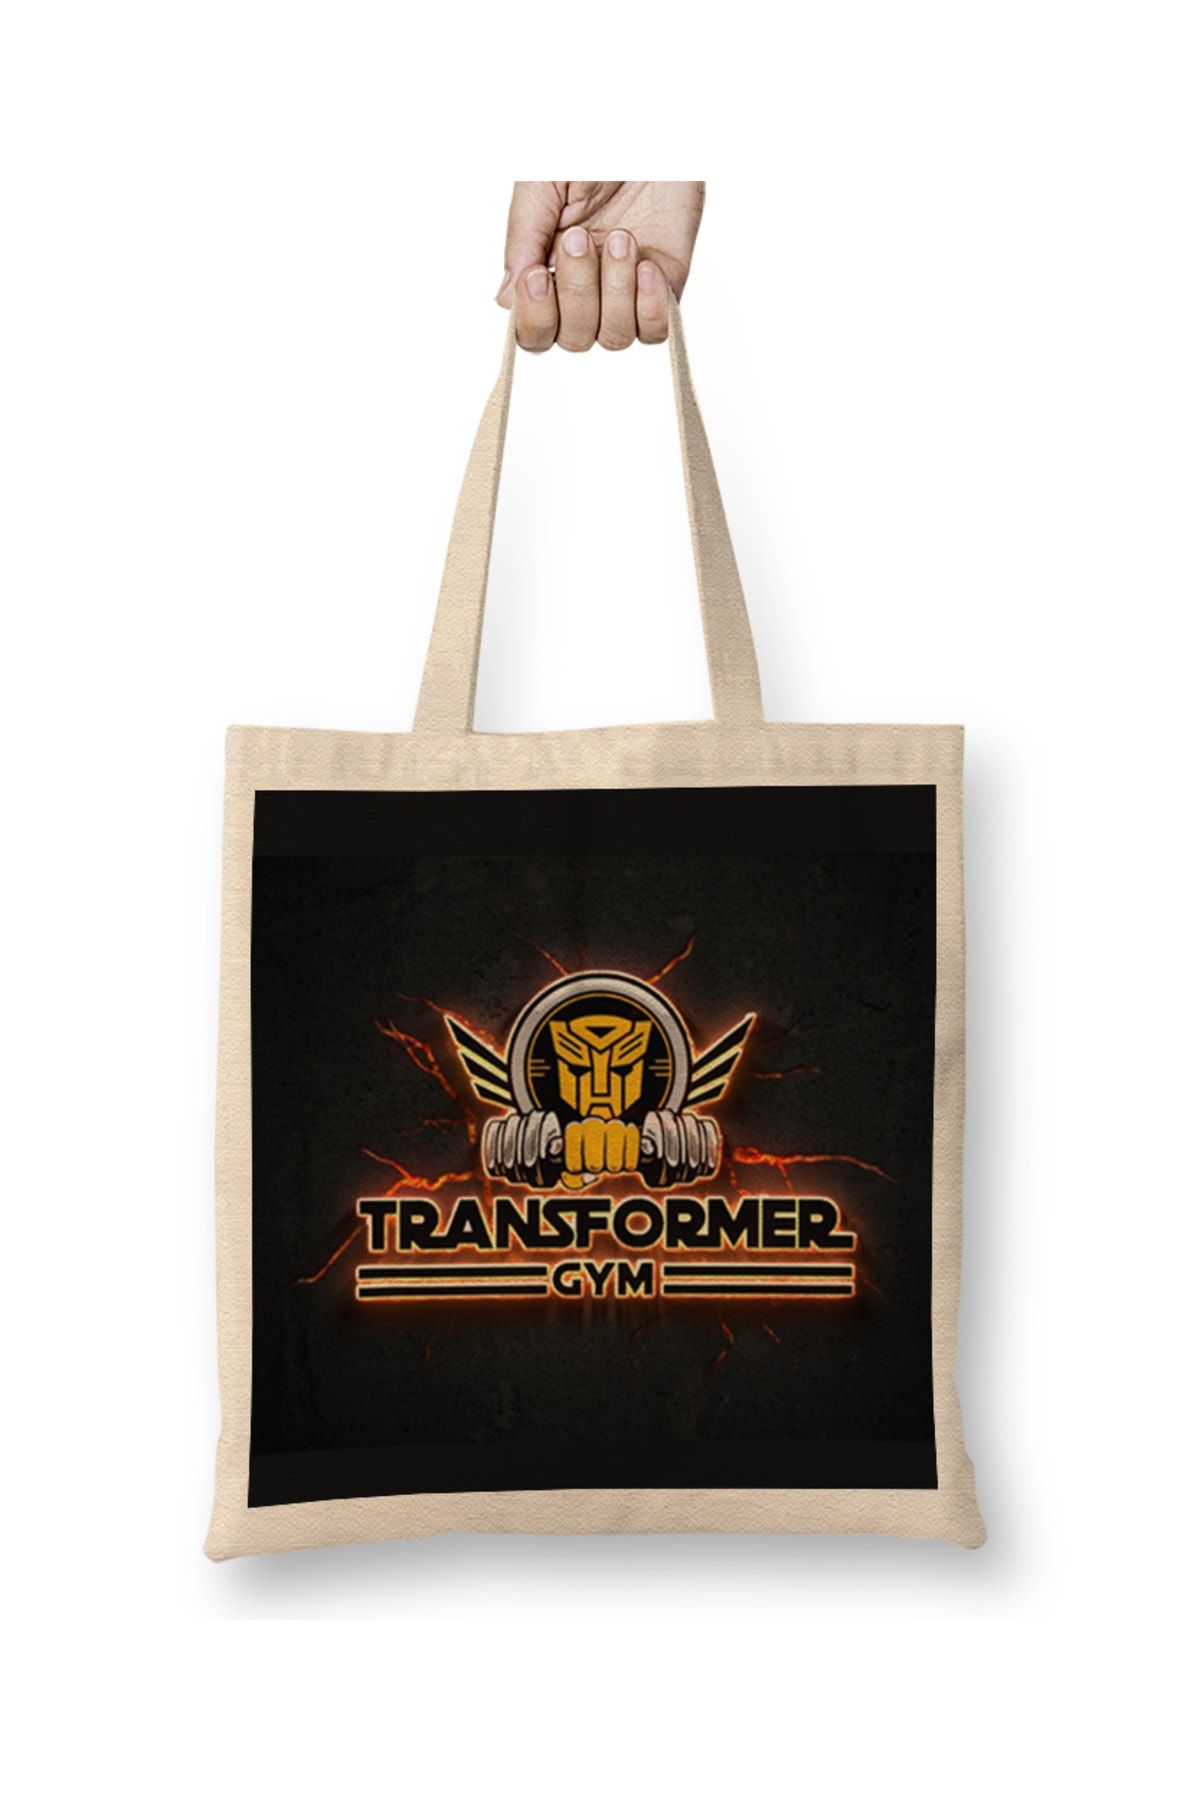 Baskı Dükkanı Transformers Gym 01 Bez Çanta Uzun Saplı